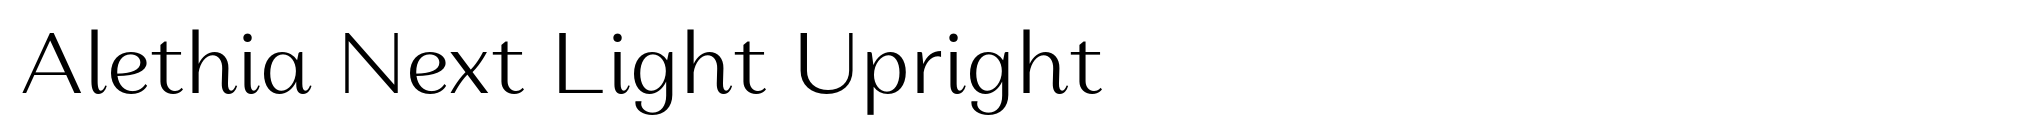 Alethia Next Light Upright image